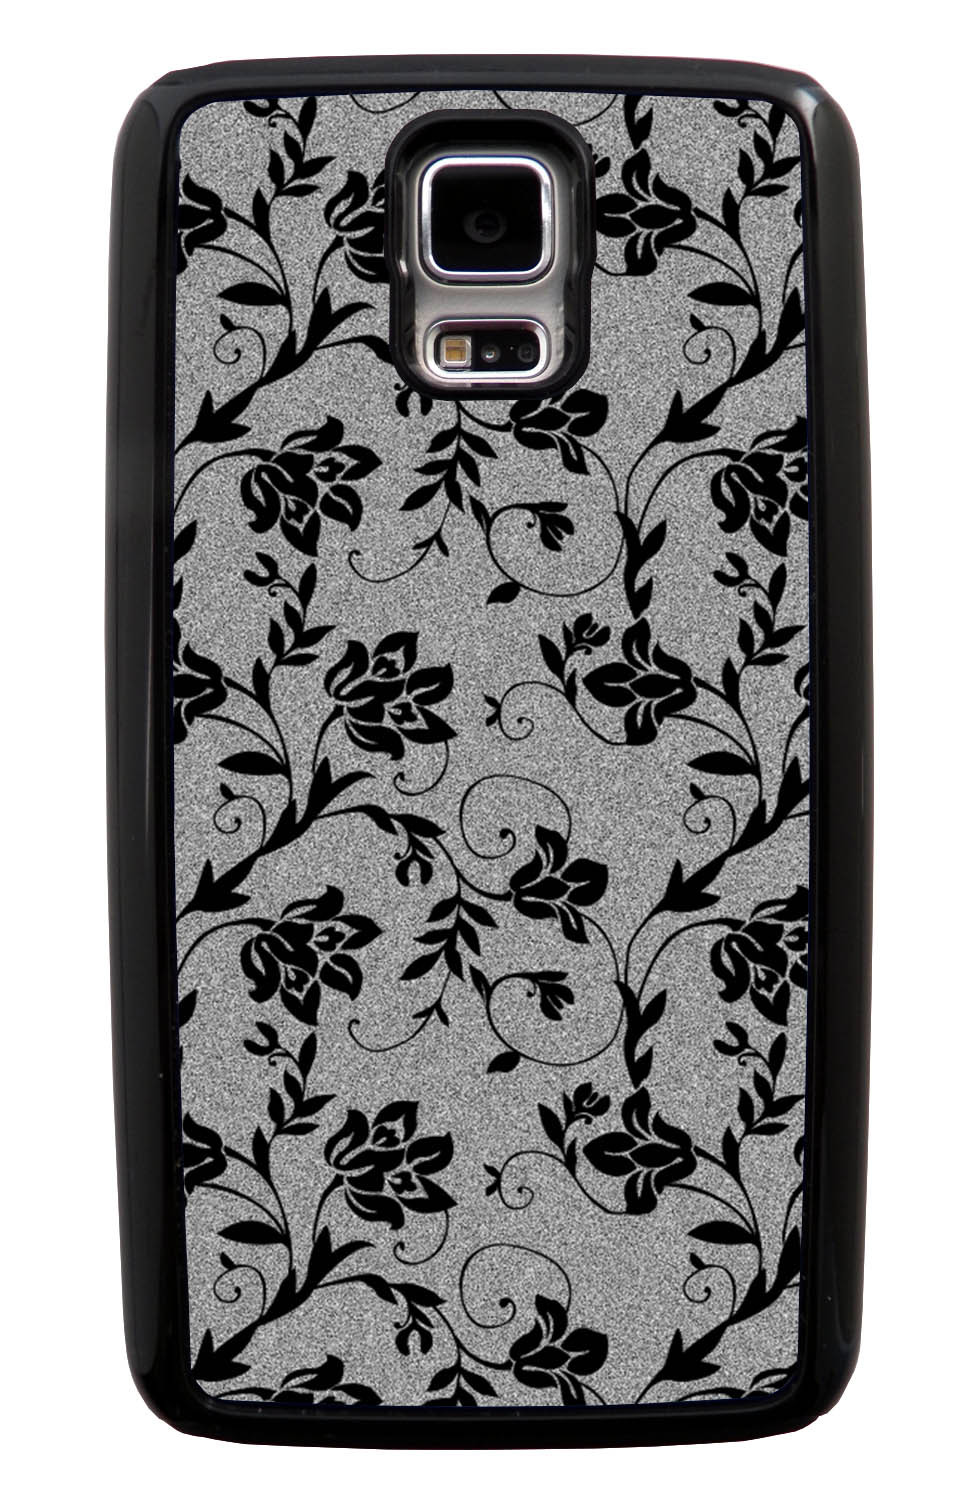 Samsung Galaxy S5 / SV Flower Case - Black on Textured Grey